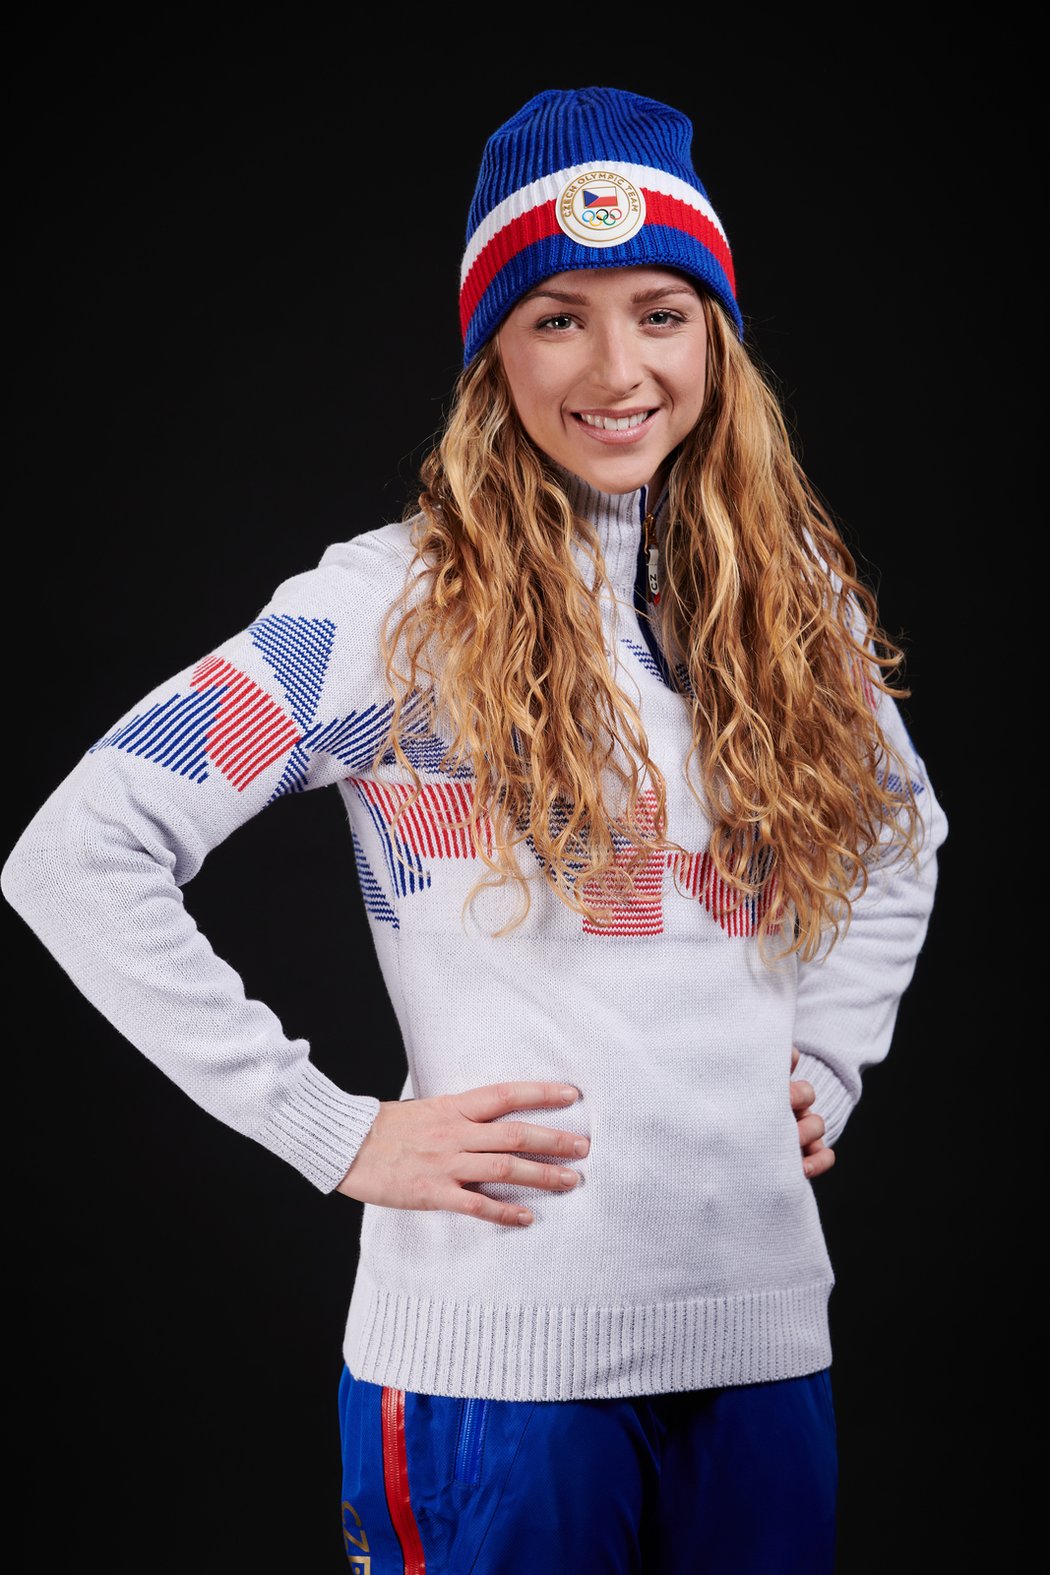 Biatlonistka Markéta Davidová v nové olympijské kolekci